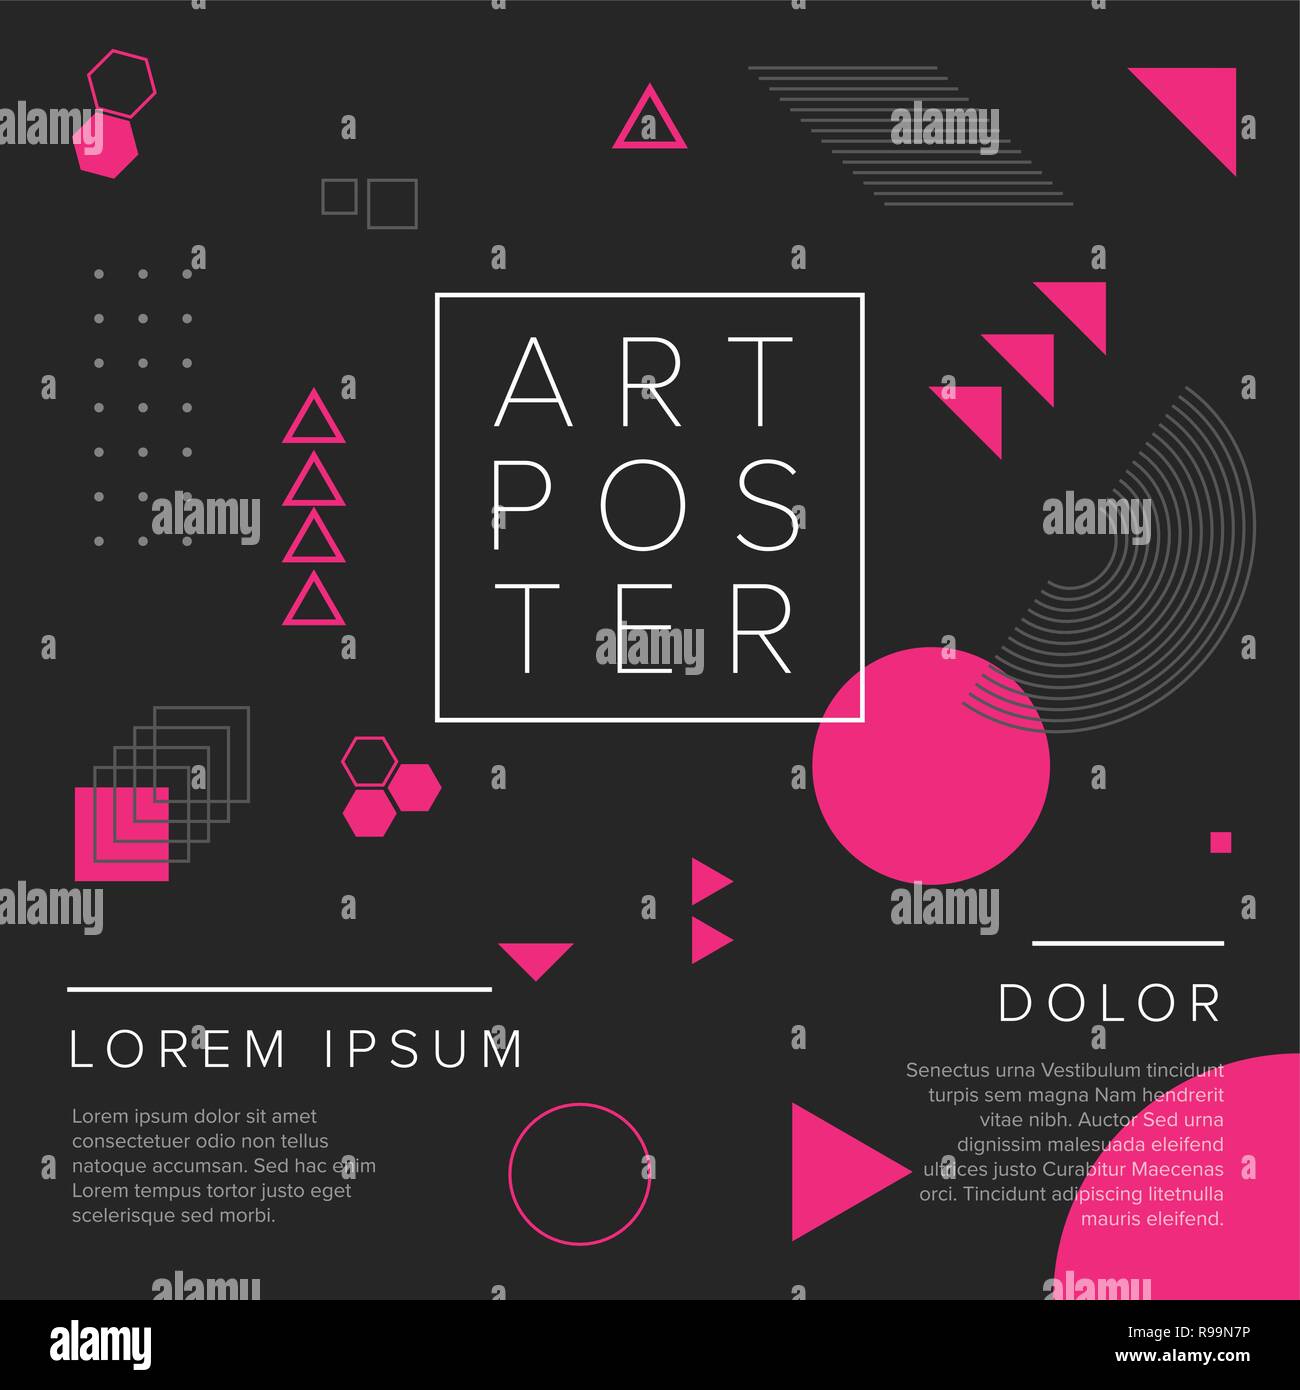 Geometría vectorial oscuro arte moderno poster plantilla para la exposición de arte, galería, concierto o fiesta de baile - versión rosa y negro. Ilustración del Vector